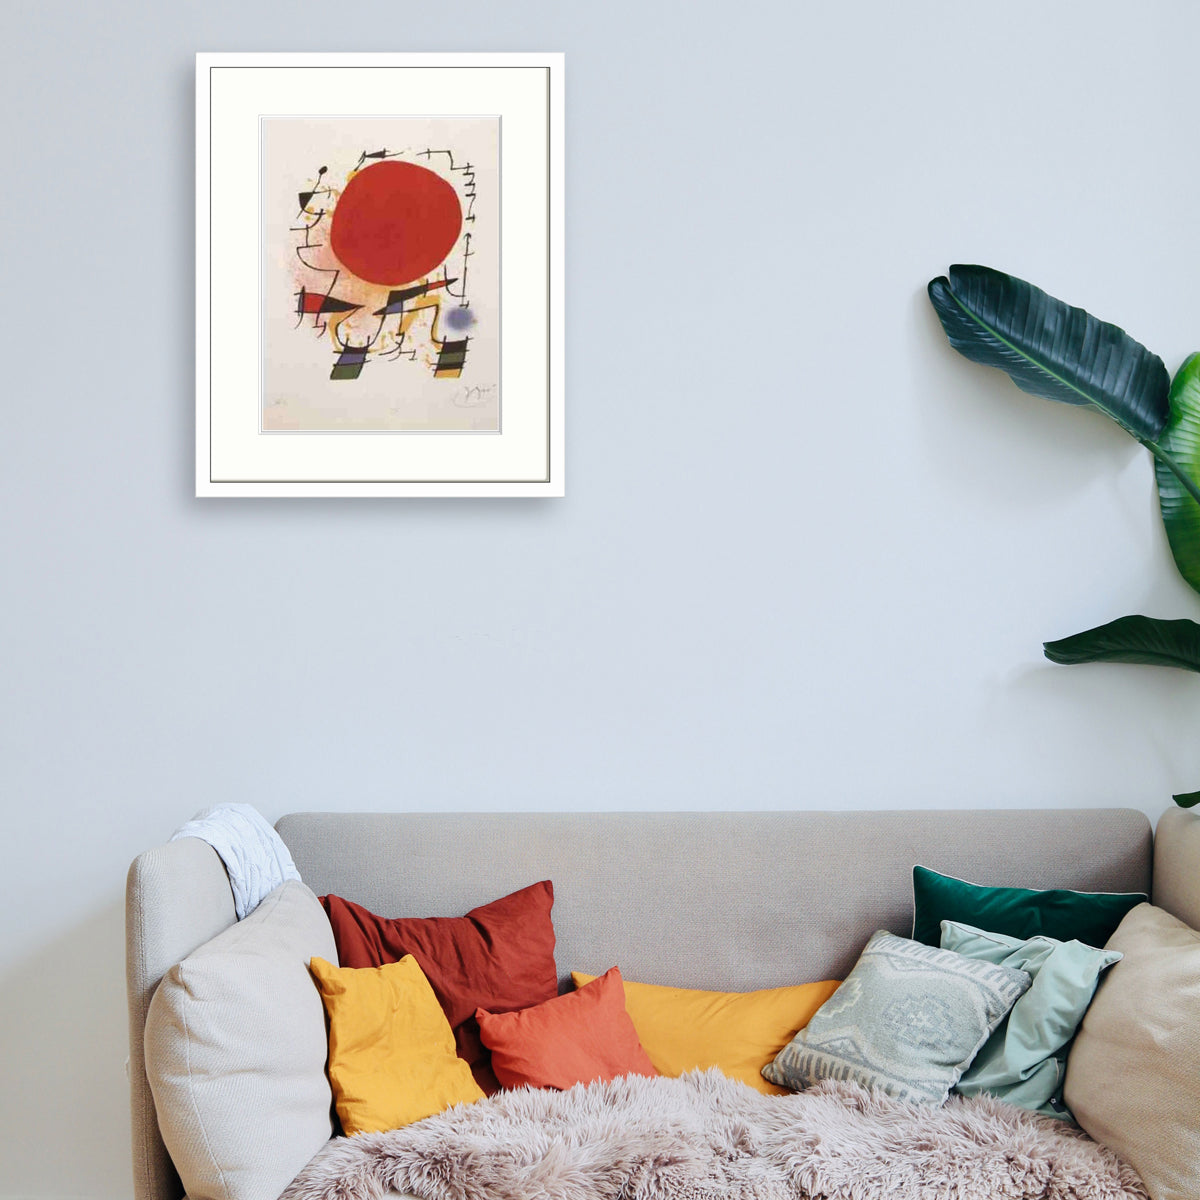 Miró - Soleil Rouge Le Cadre Décoration intérieure Tableaux cadre bois affiche poster oeuvre d'art rapport qualité prix pas cher peintre célèbre